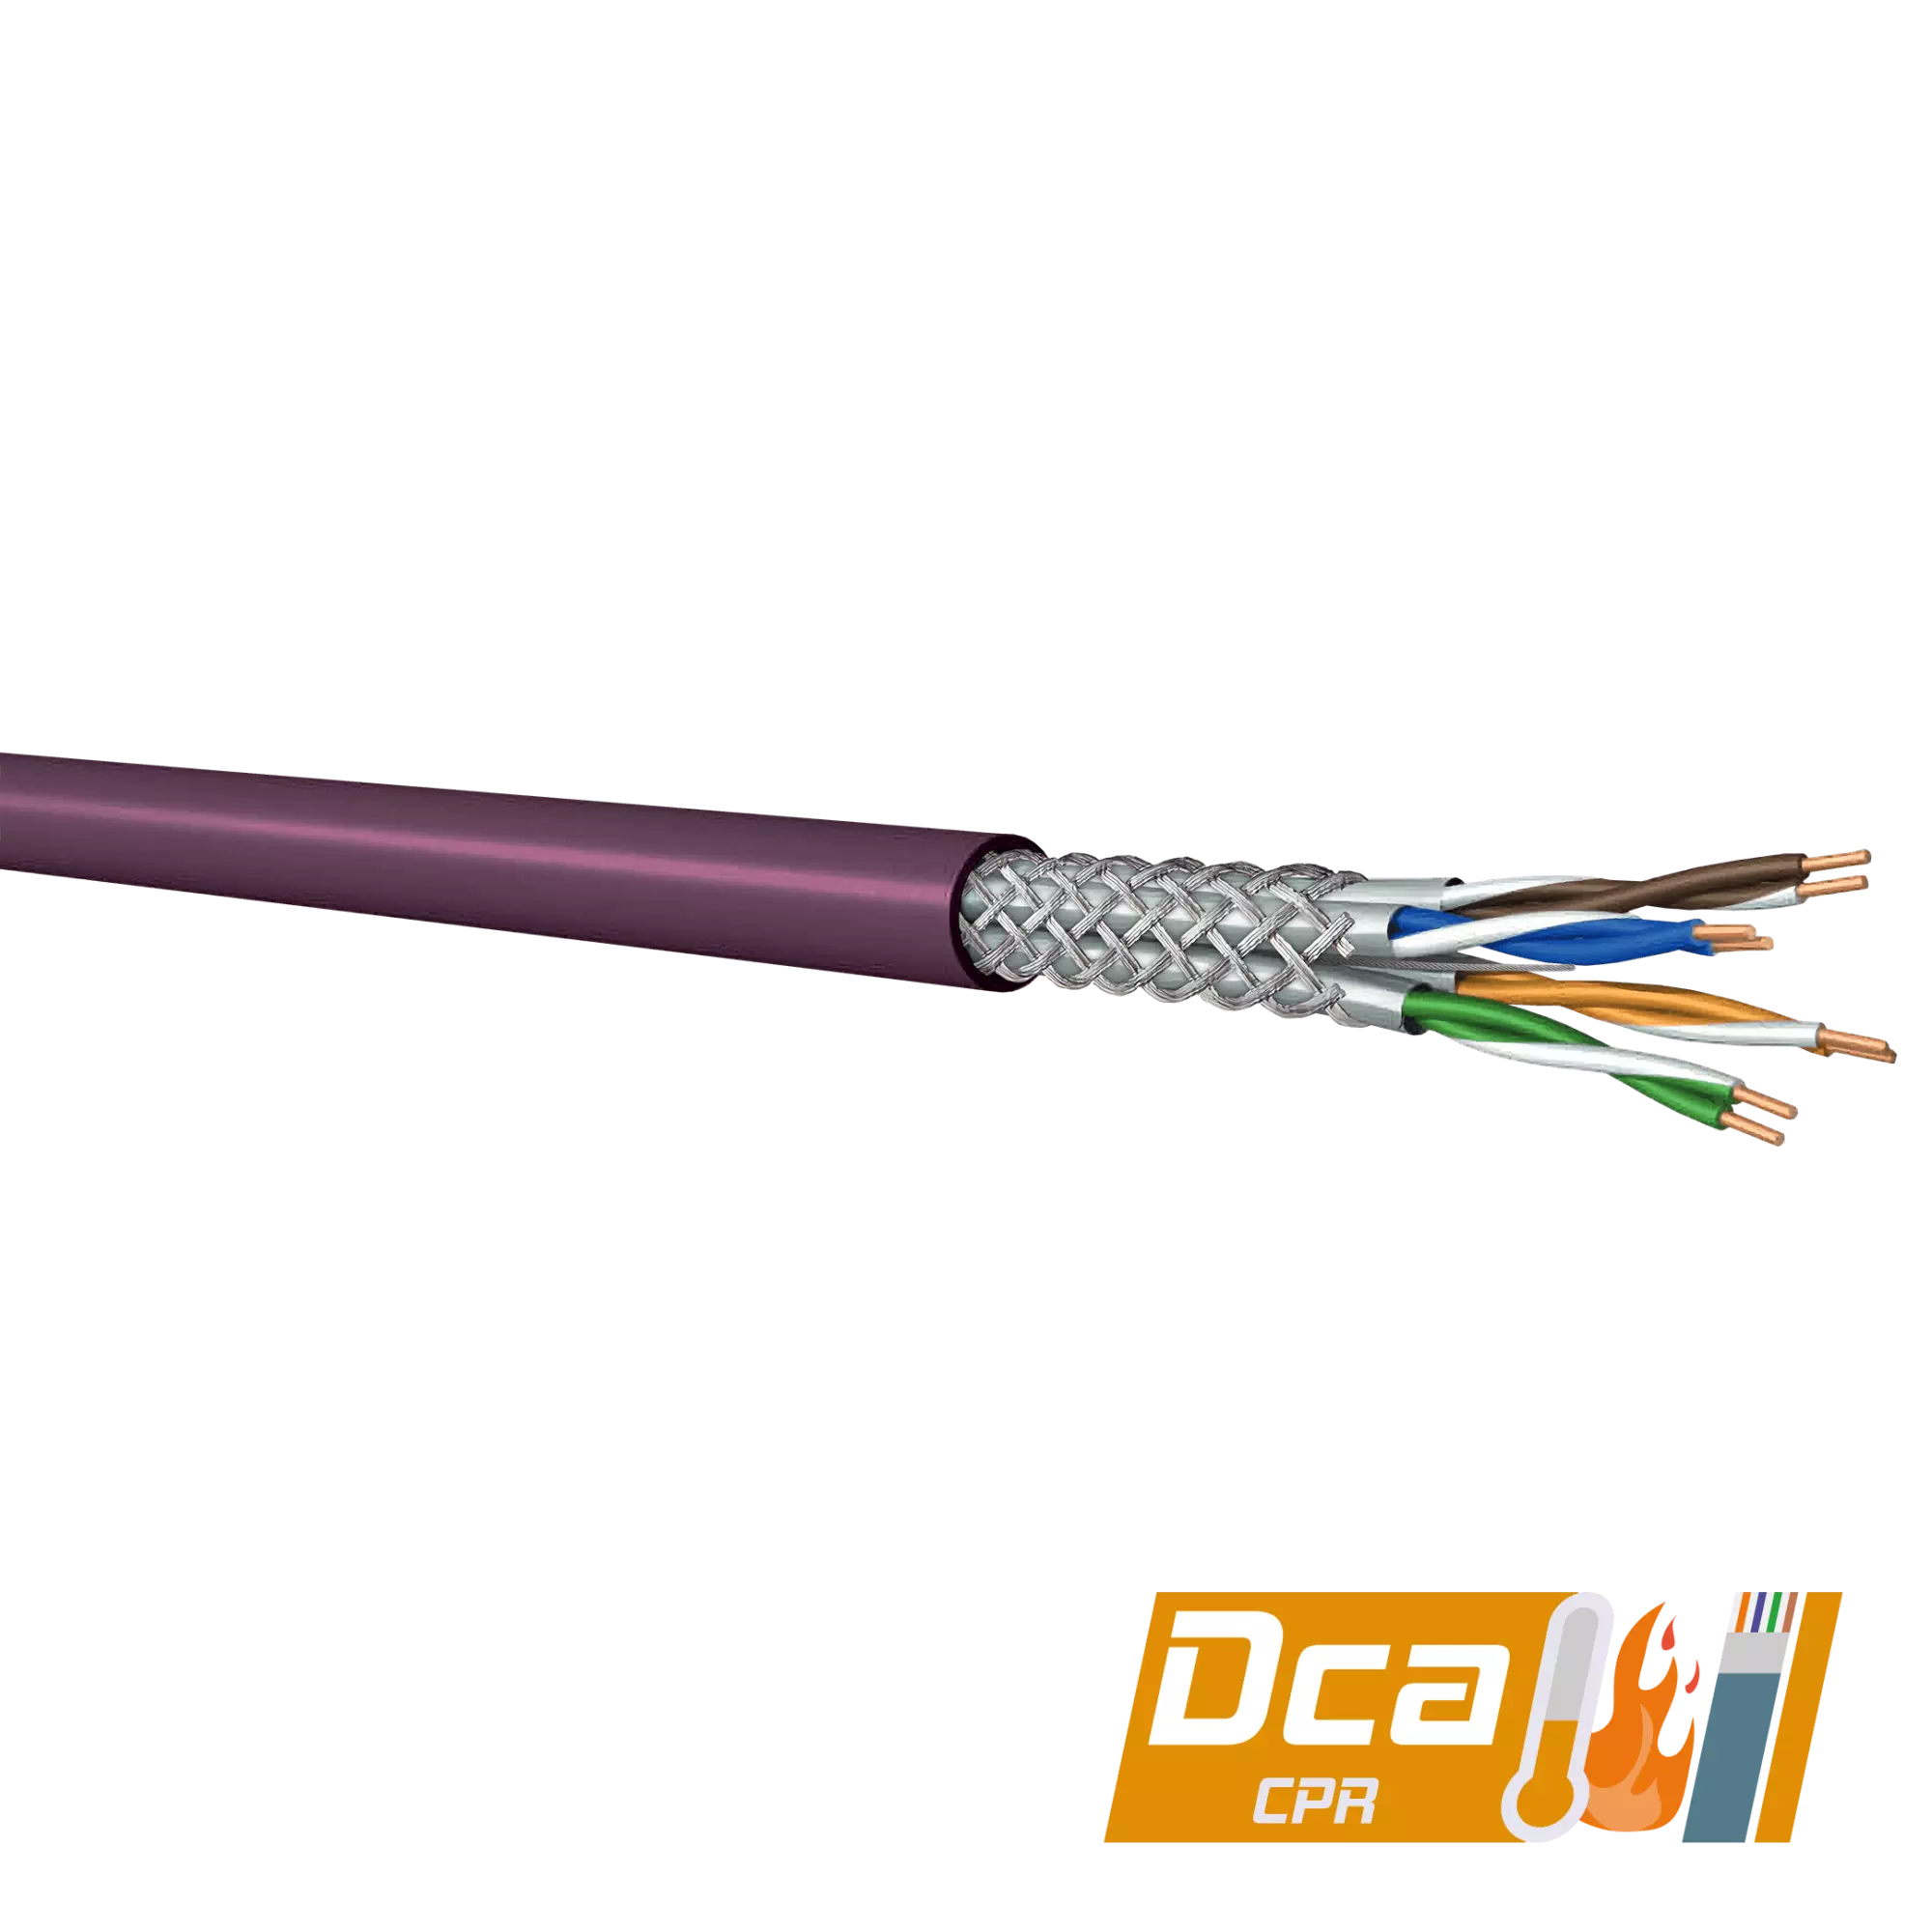 Cable Ethernet Cat7 S/FTP Belden de color Gris funda de LSZH